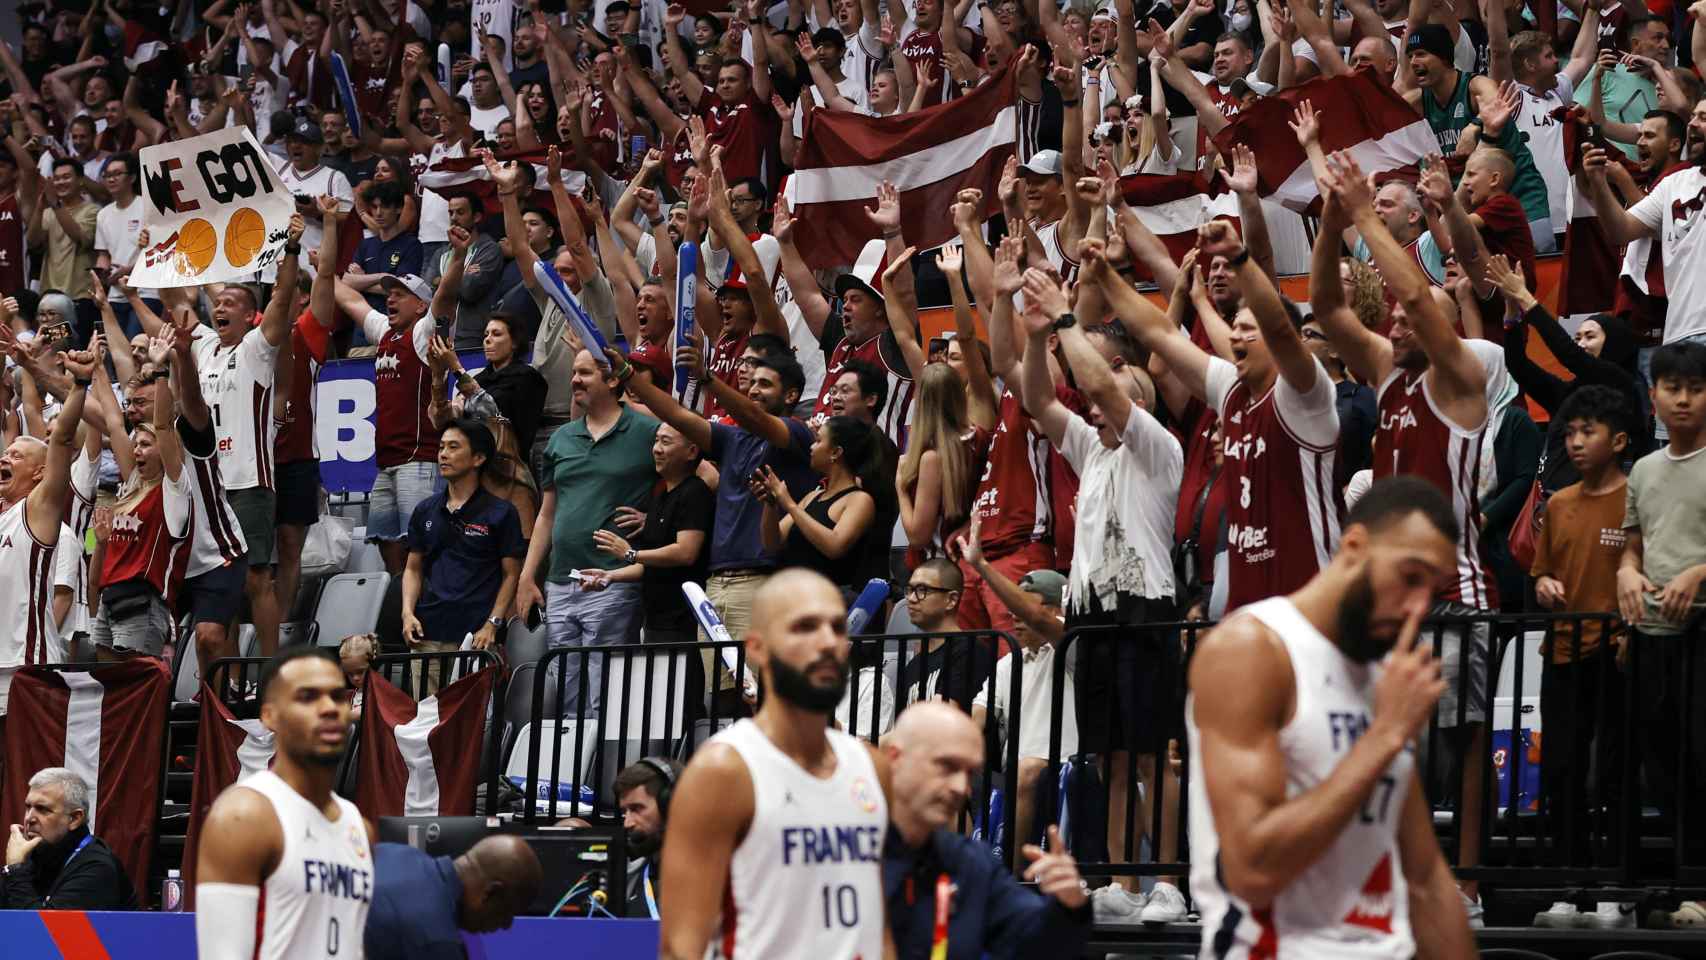 Aficionados de Letonia celebrando el triunfo contra Francia en el Mundial